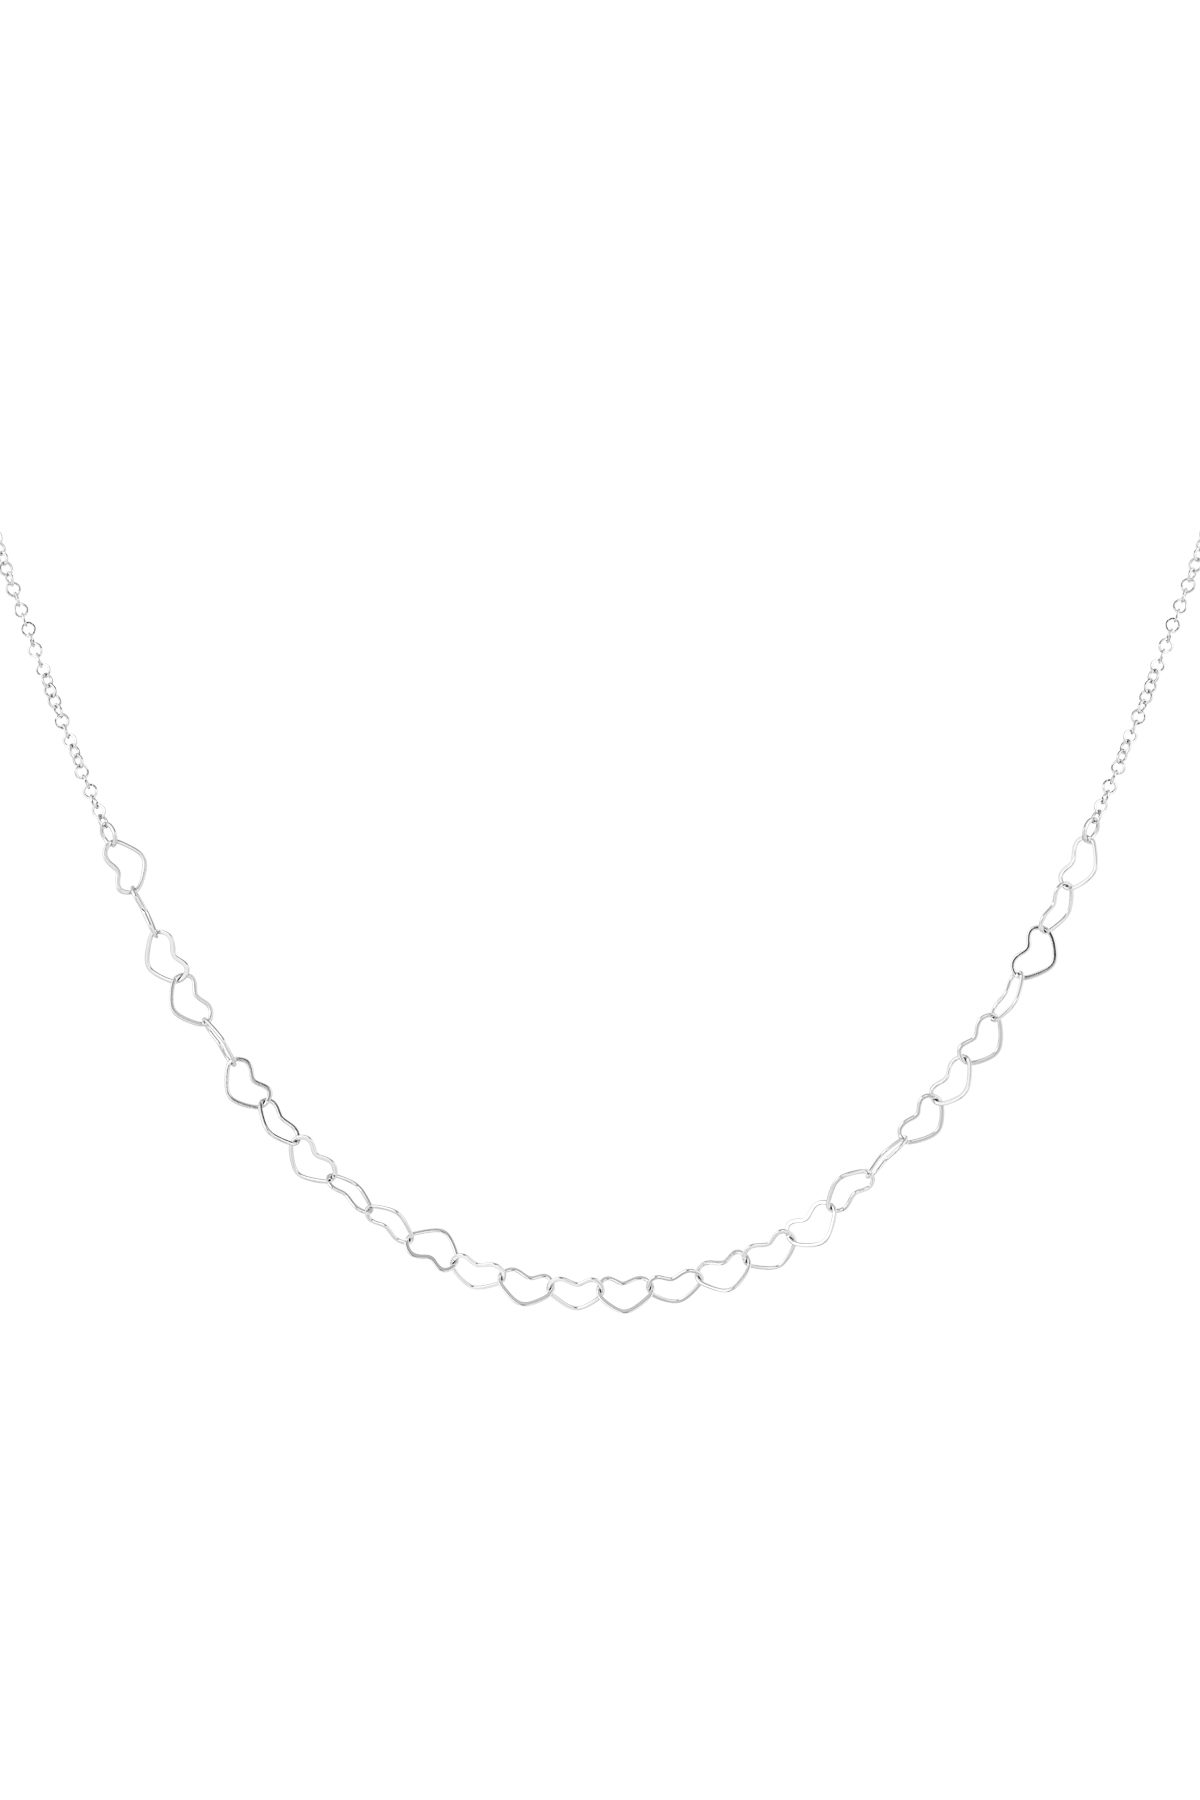 Halskette verbundene Herzen – Silber h5 